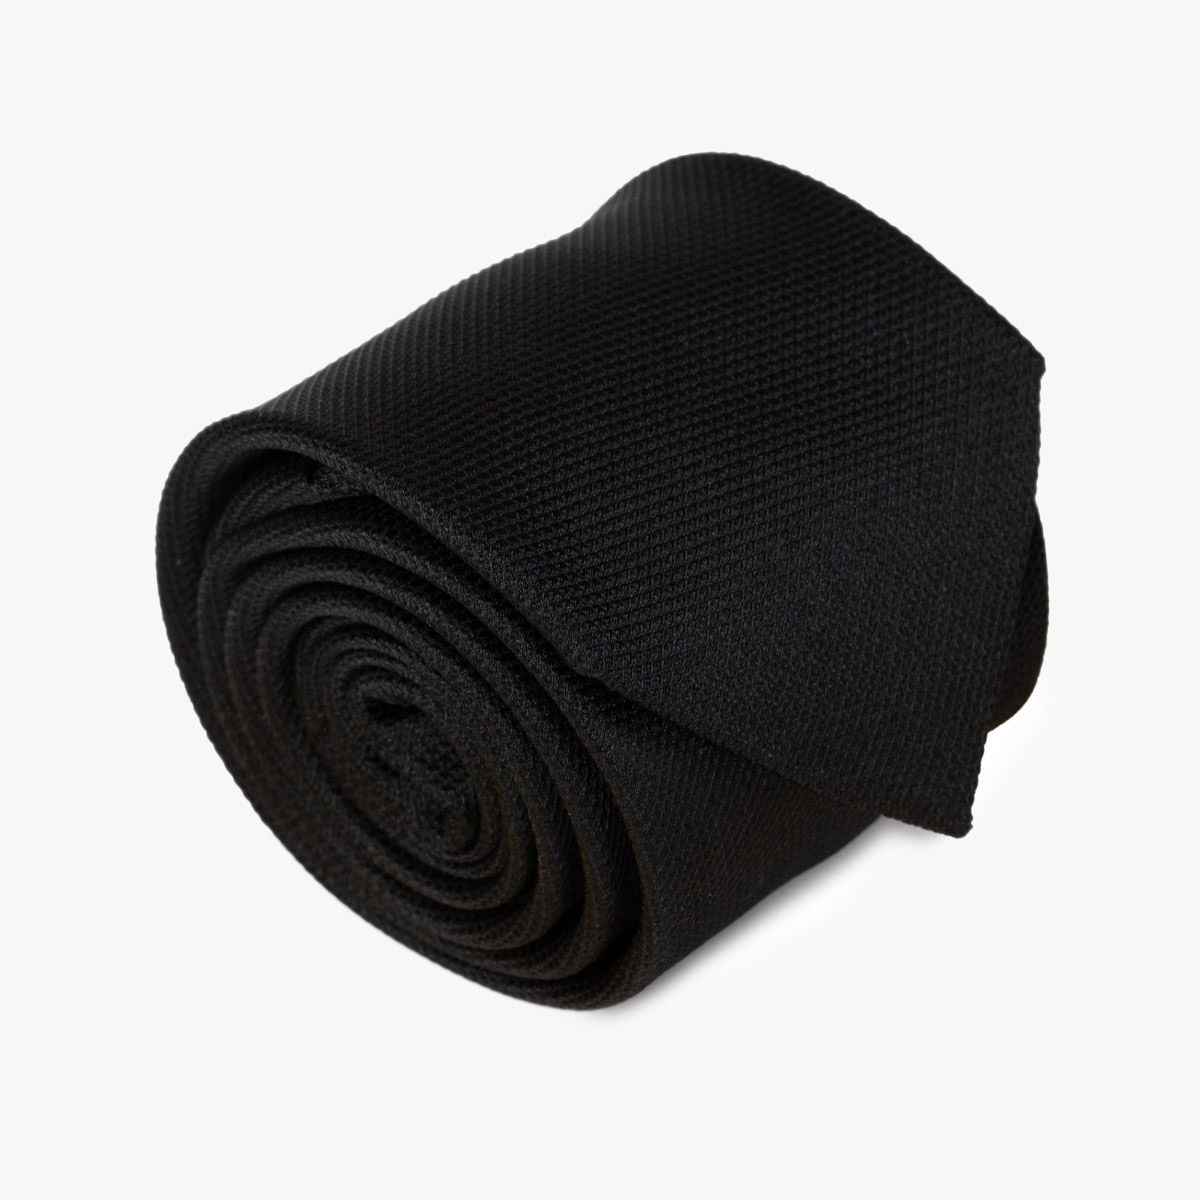 Aufgerollte Krawatte in uni schwarz